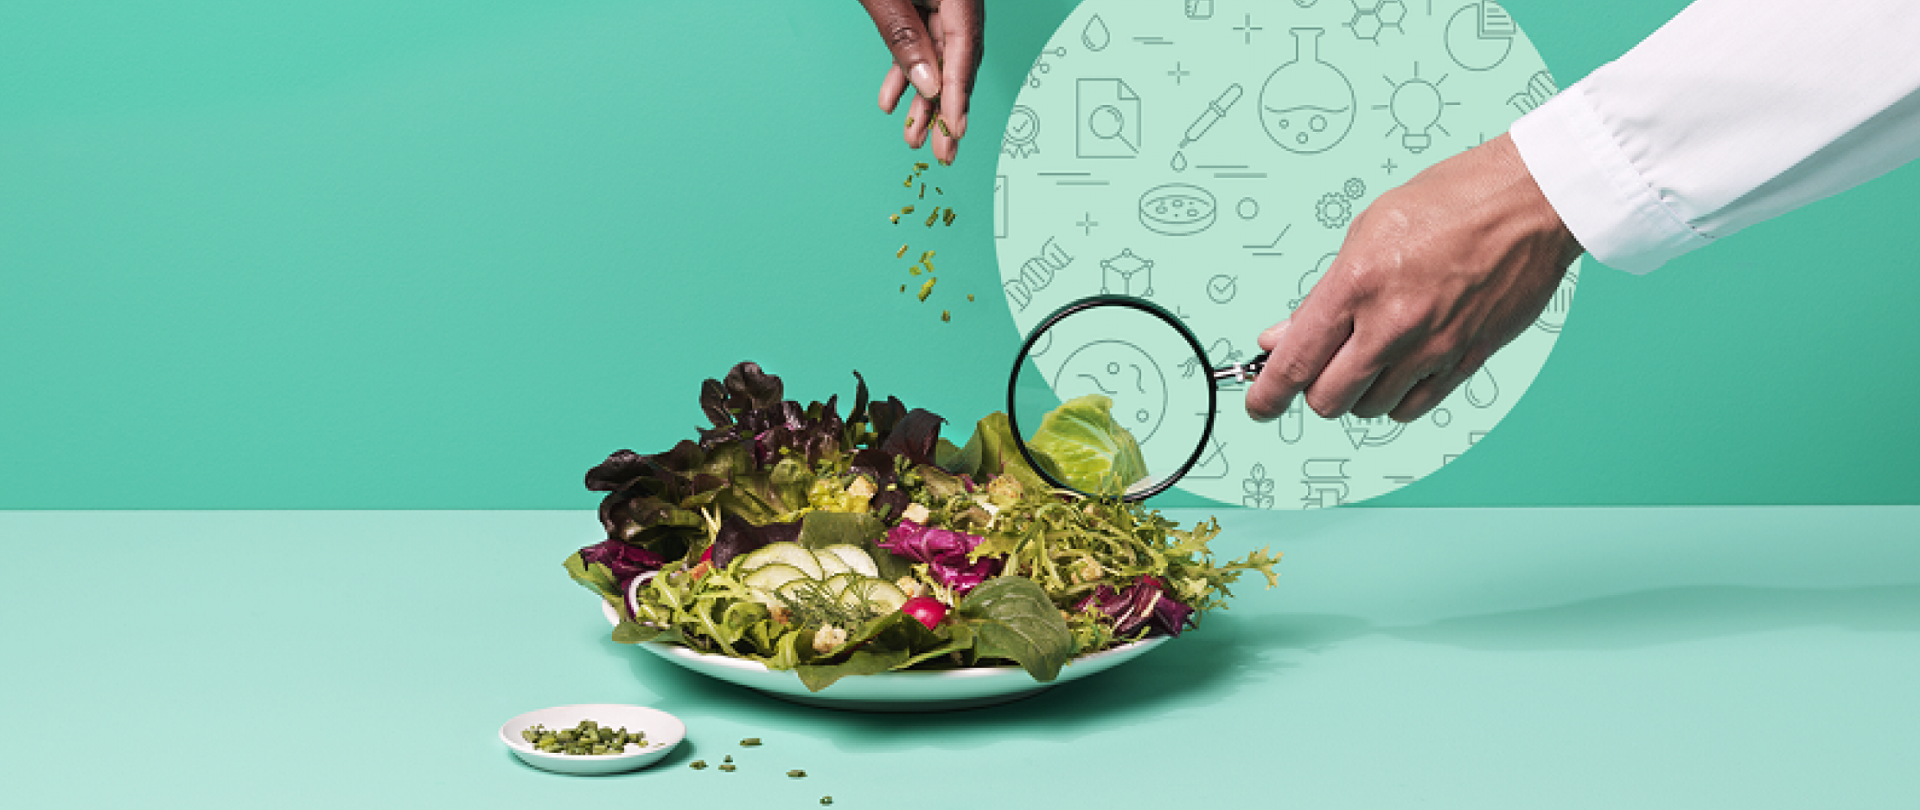 Plakat promujący II edycję kampanii informacyjnej „Wybieraj Bezpieczną Żywność” #EUChooseSafeFood.”
Na stole w kolorze pastelowym niebiesko turkusowym znajduje się talerz ze zdrową żywnością . Naukowiec z lupą przygląda się znajdującym się tam produktom.